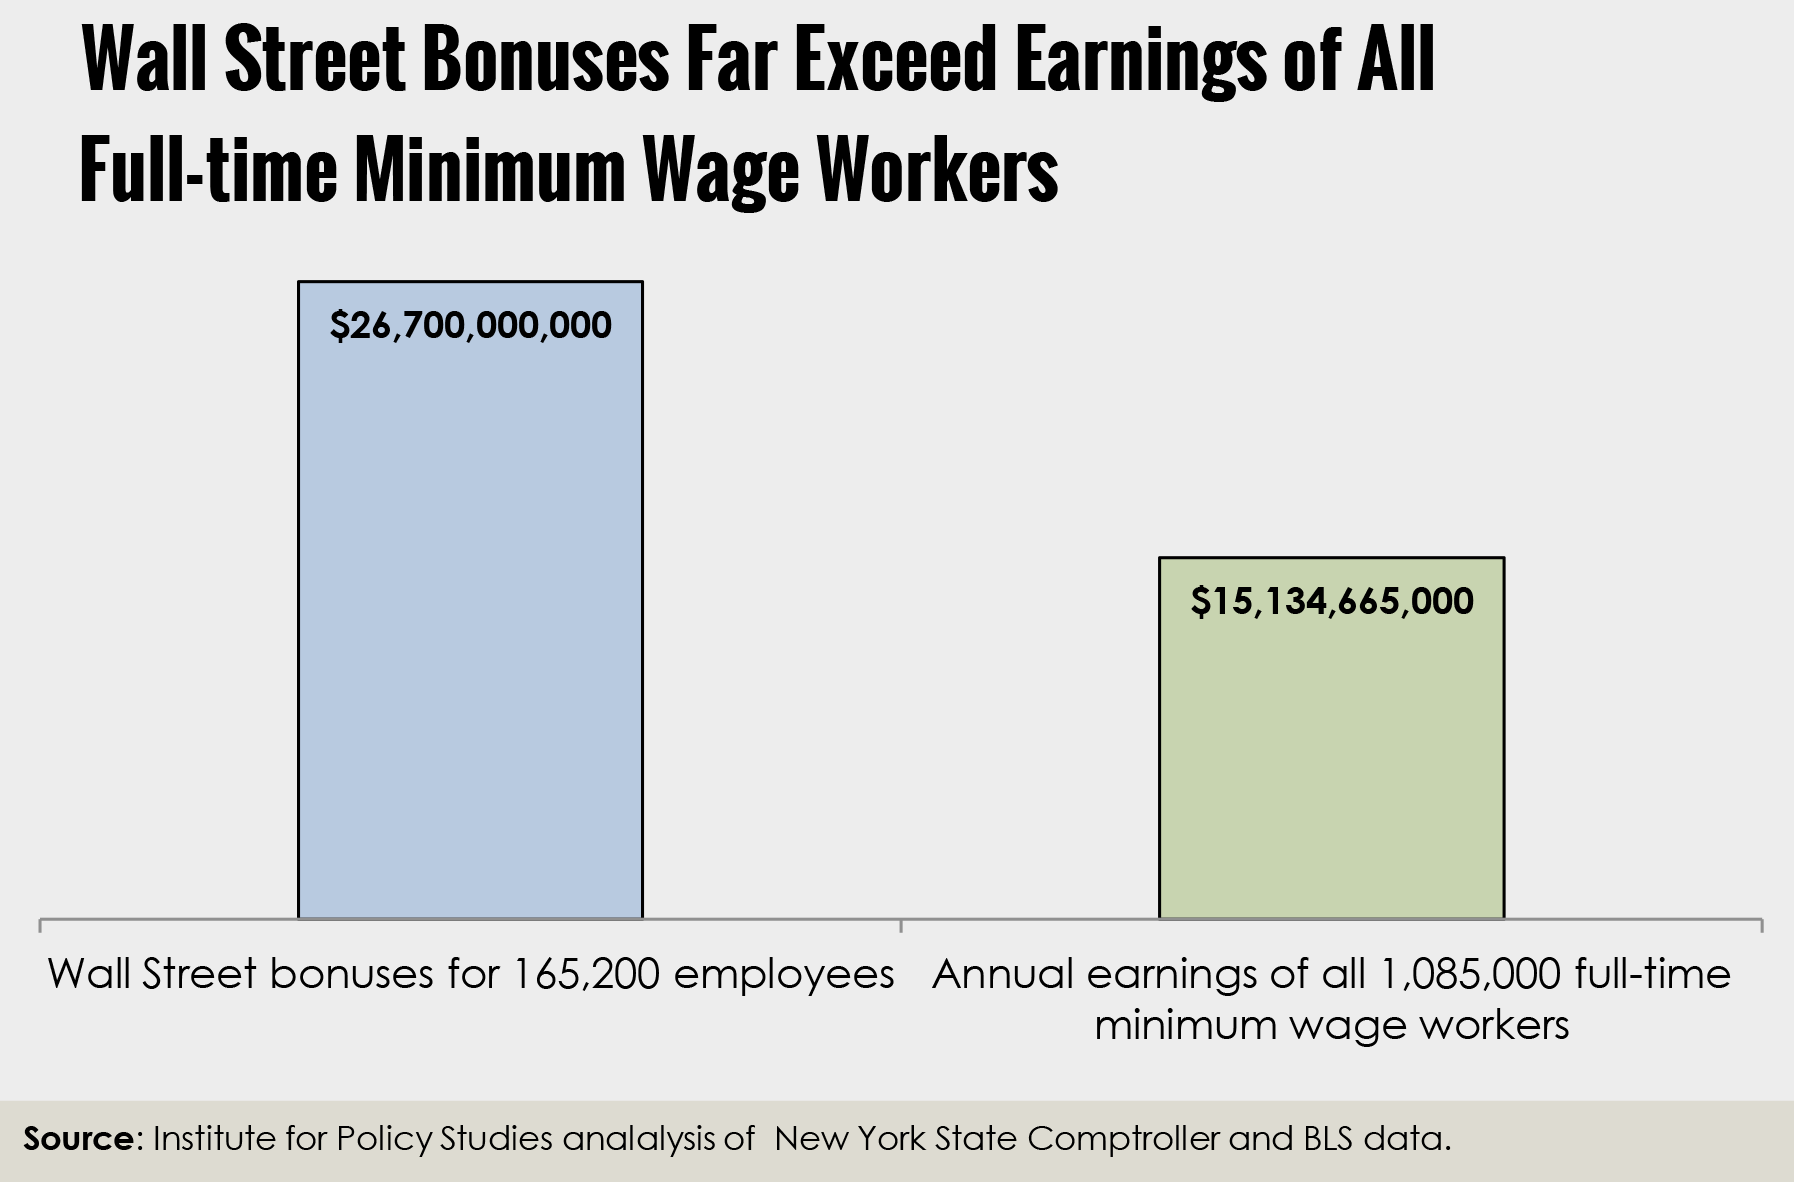 Wall Street Bonuses and the Minimum Wage